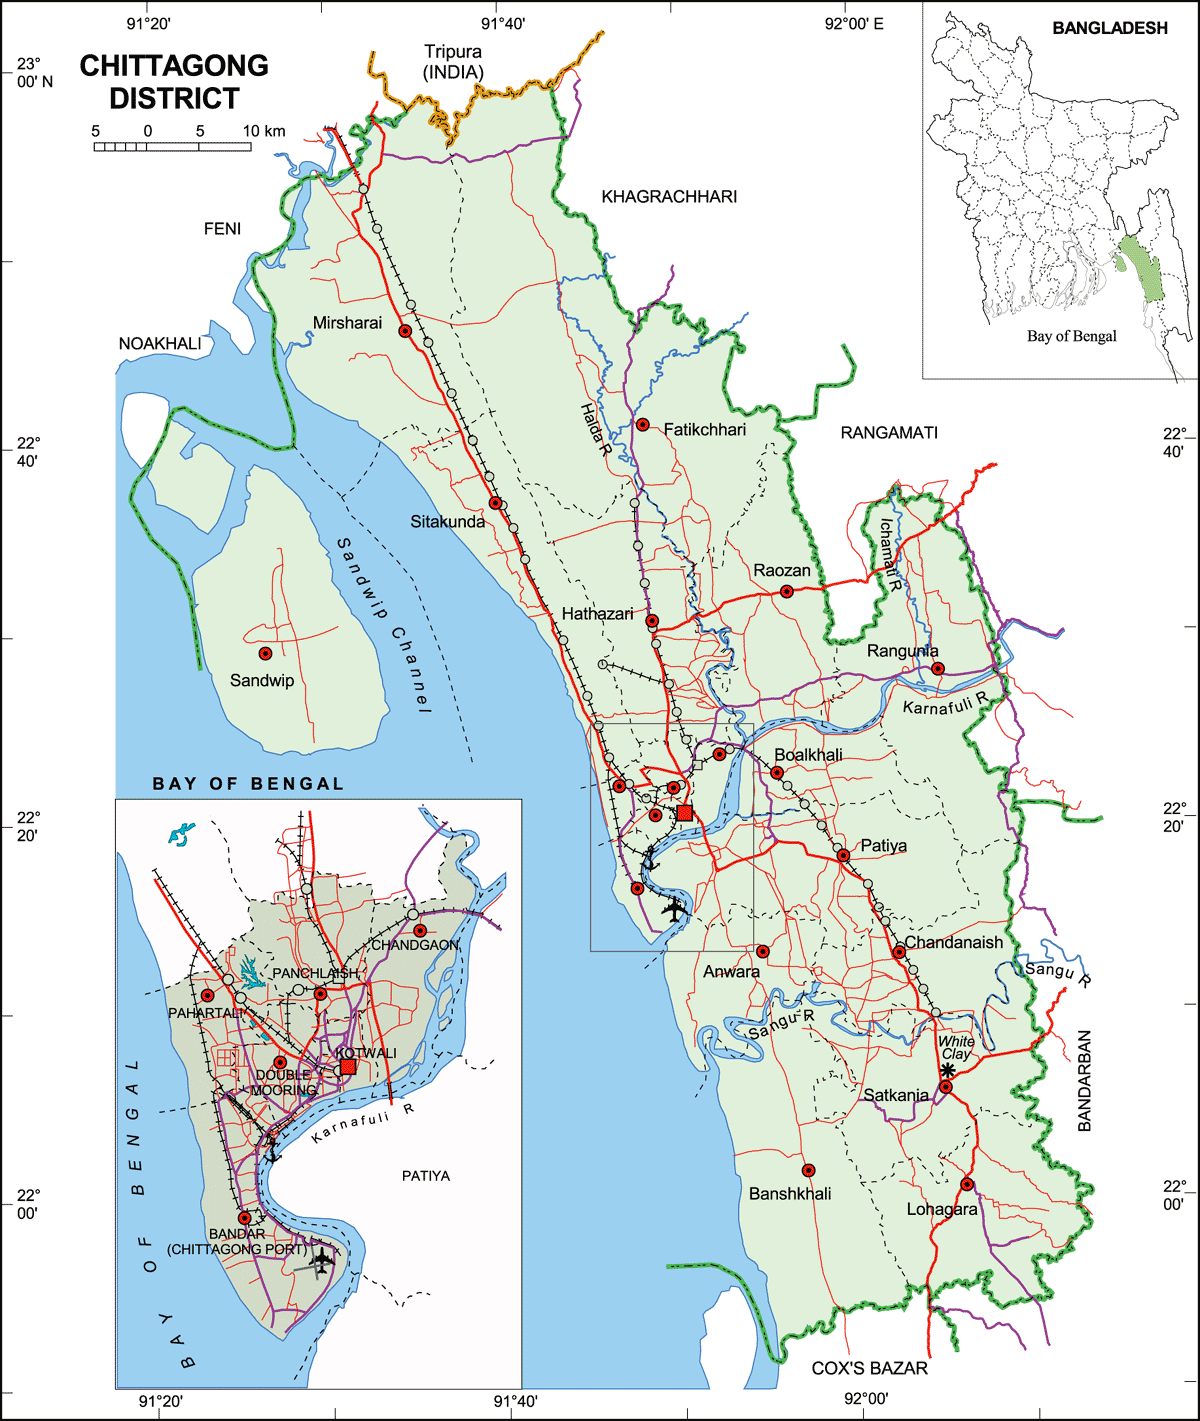 https://blogger.googleusercontent.com/img/b/R29vZ2xl/AVvXsEjI7Rh3qaUOsmgzyV9jN0aEIfFWhUm0vPh3FdGHD3LIdfWZktQrCHuMTPCXFML8JrcyT330C4m3ivVN3Ym5B05RLxddqDtHsq8zpawPncsVOEFPeIYxLwY_evAmTv4z6b5kDc1cMVUANGI/s1600/Chittagong+District+Map.GIF